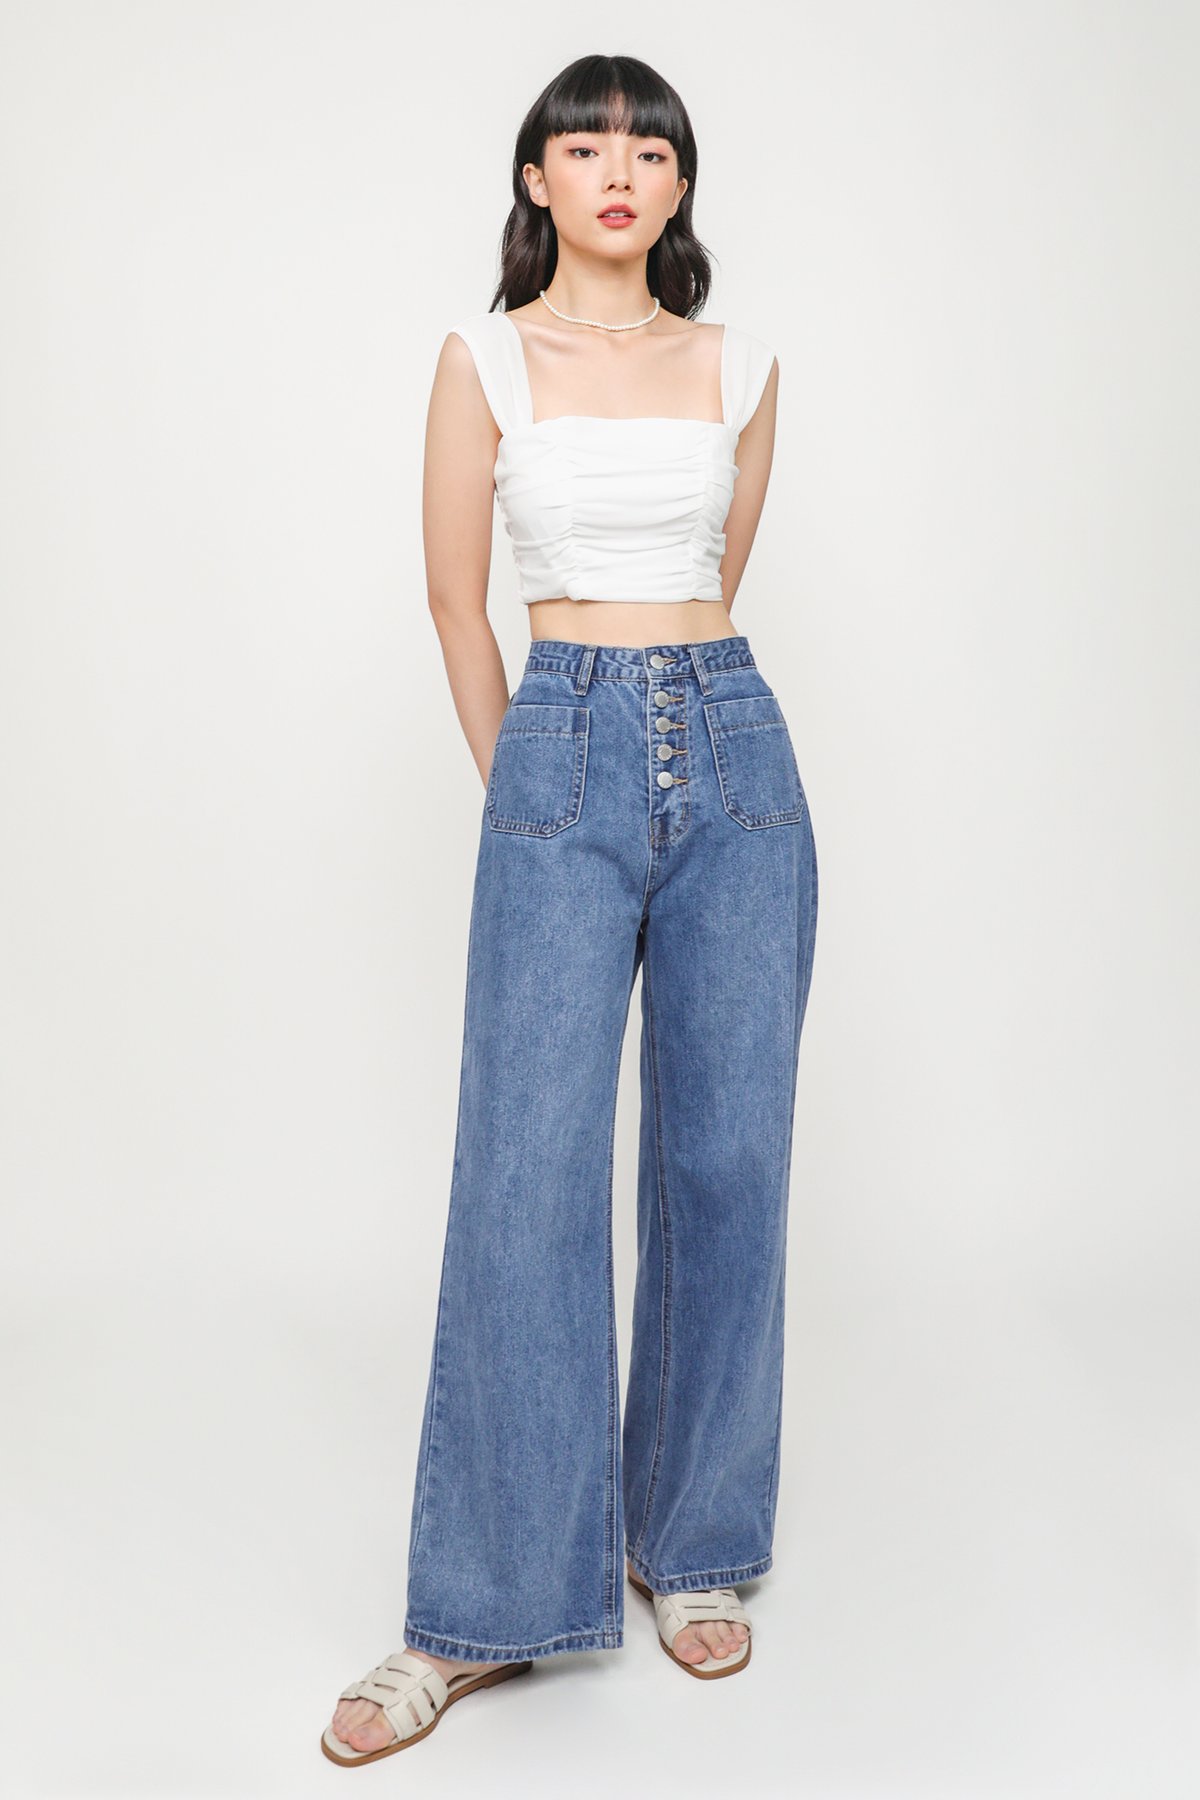 Ingrid Multi Buttons Jeans (Vintage Wash)